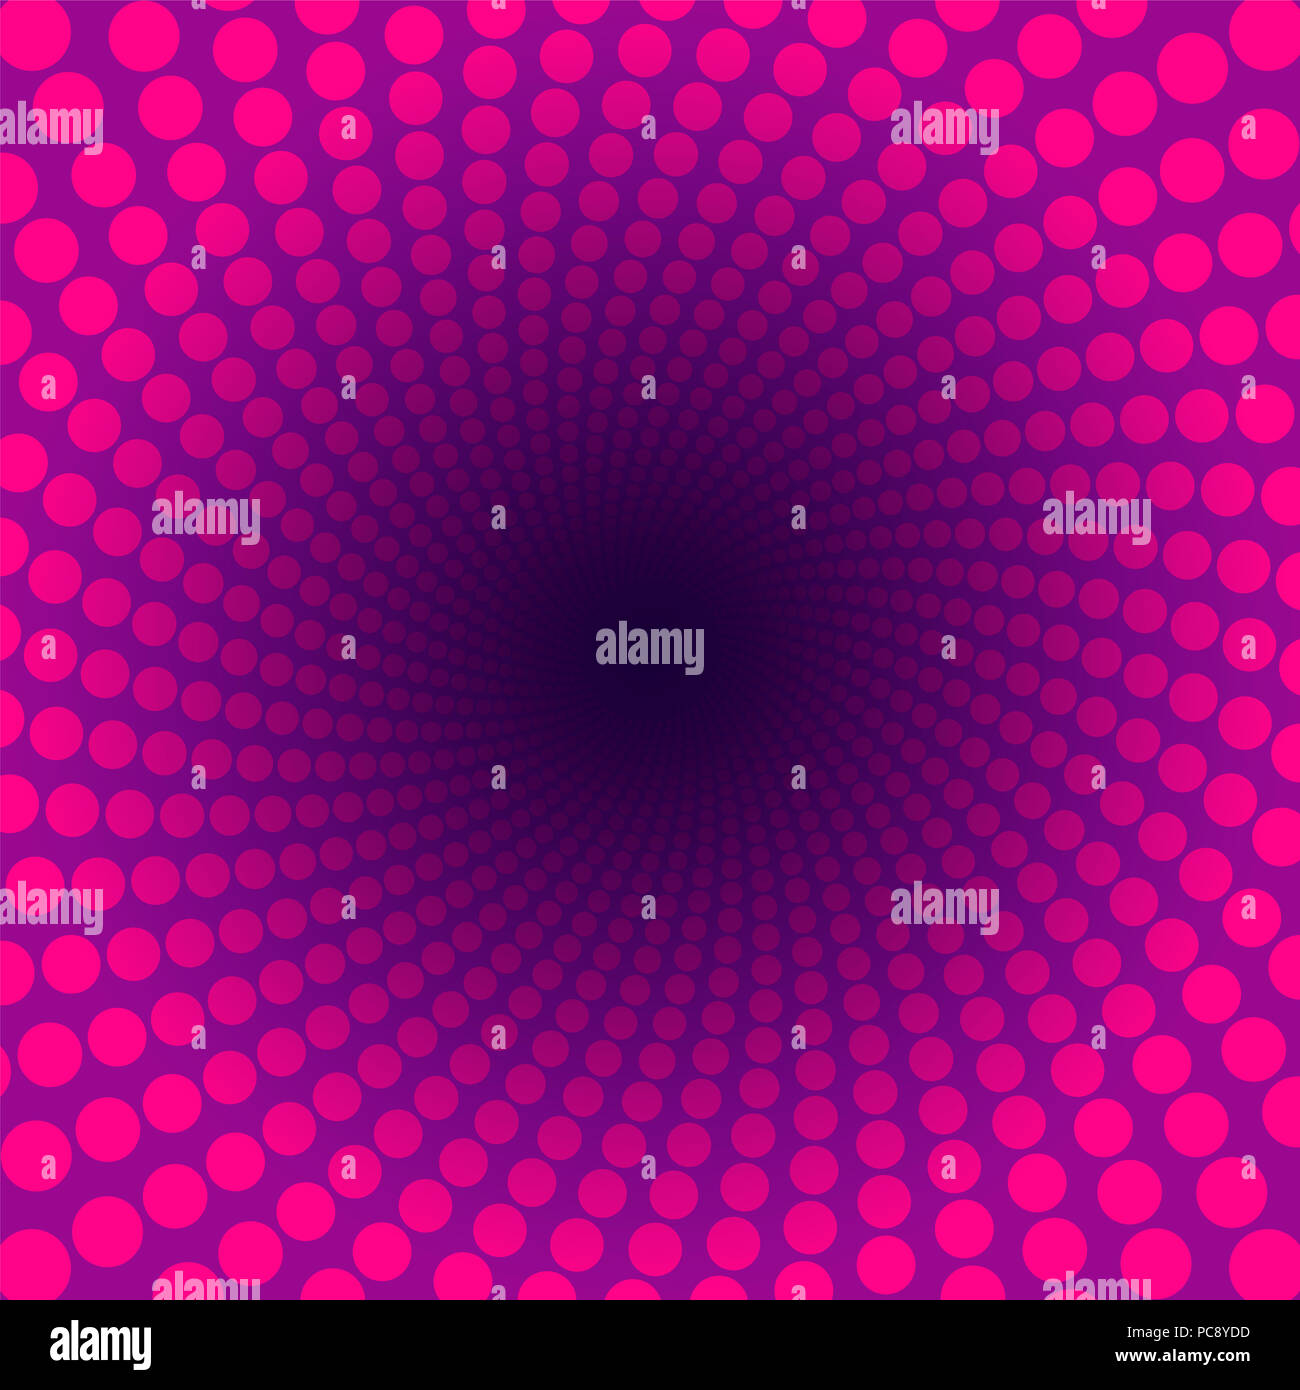 Patrón de espiral de pink dots en un túnel con púrpura oscuro en el centro. Happy girl power ilustración. Foto de stock